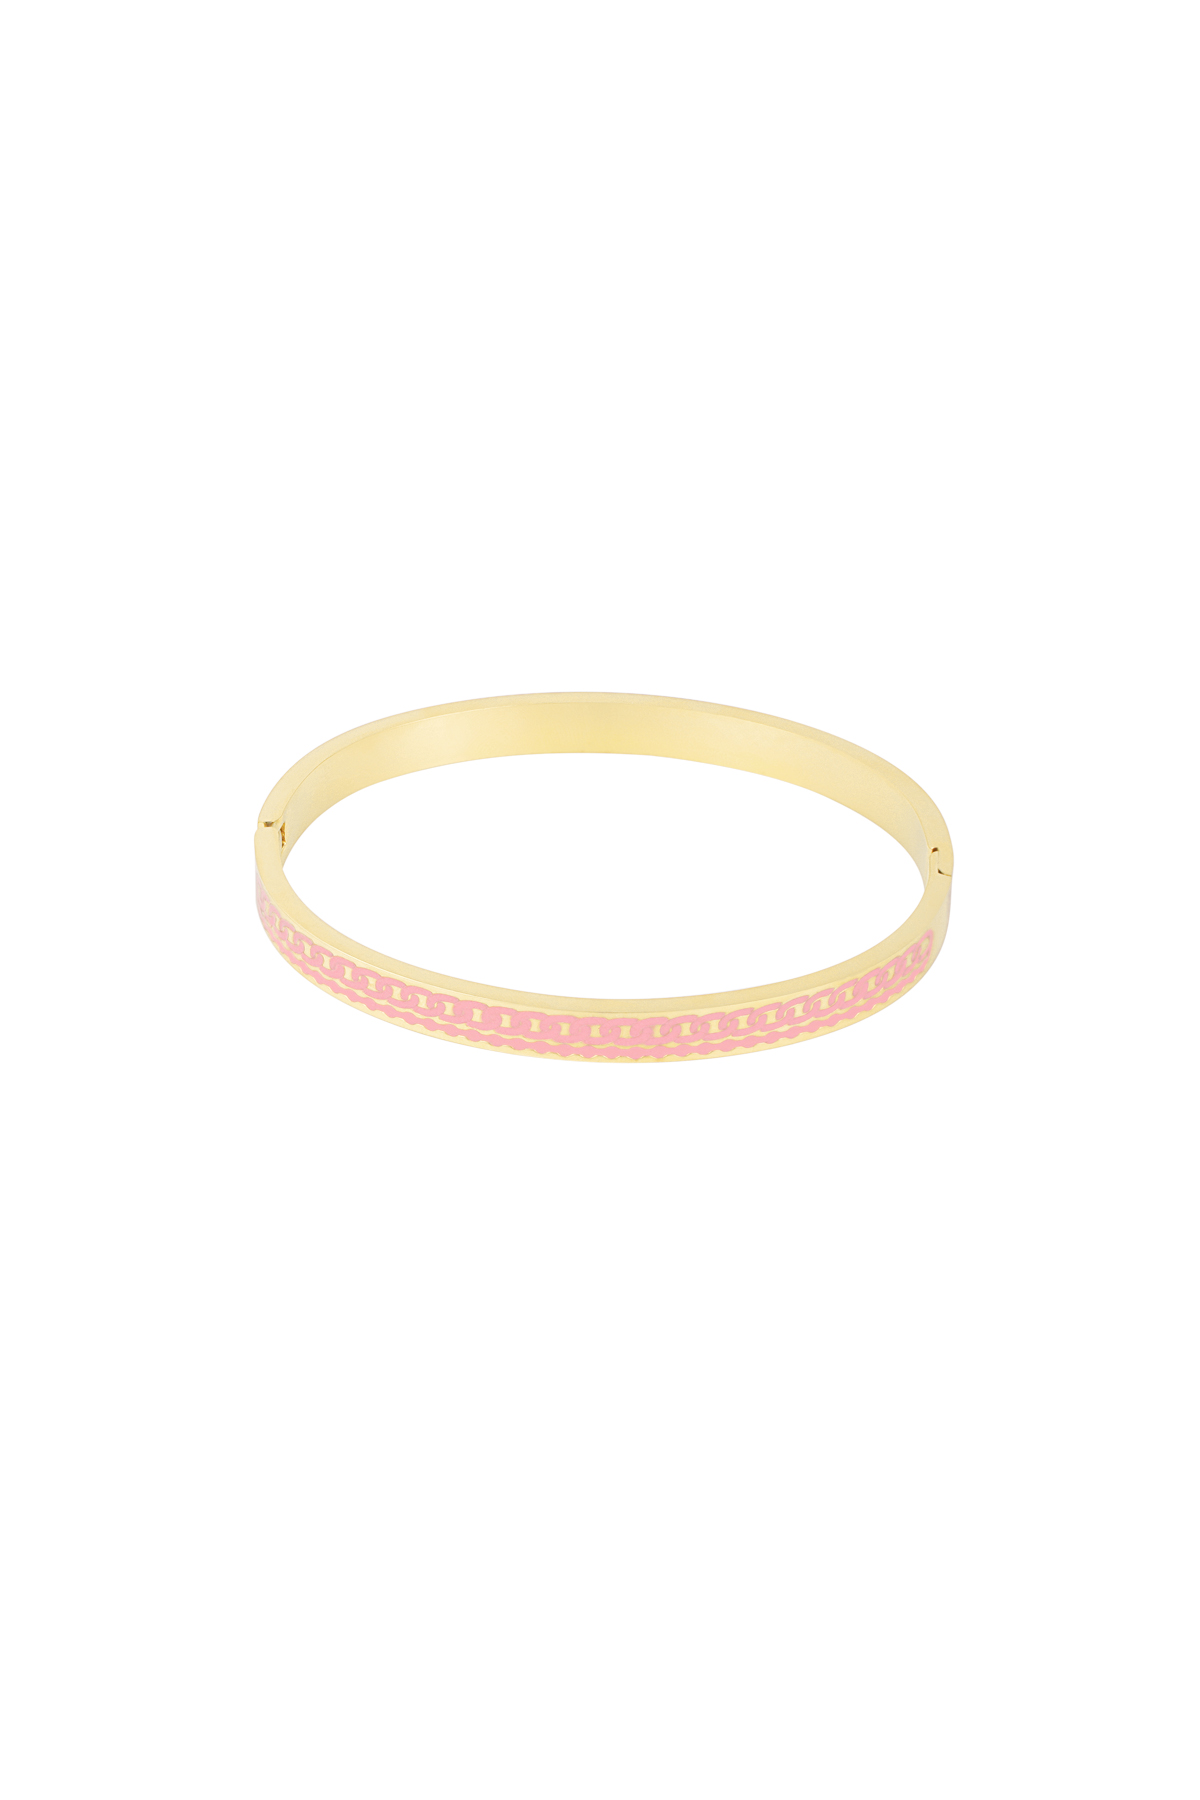 Colored bangle bracelet - pink/gold 